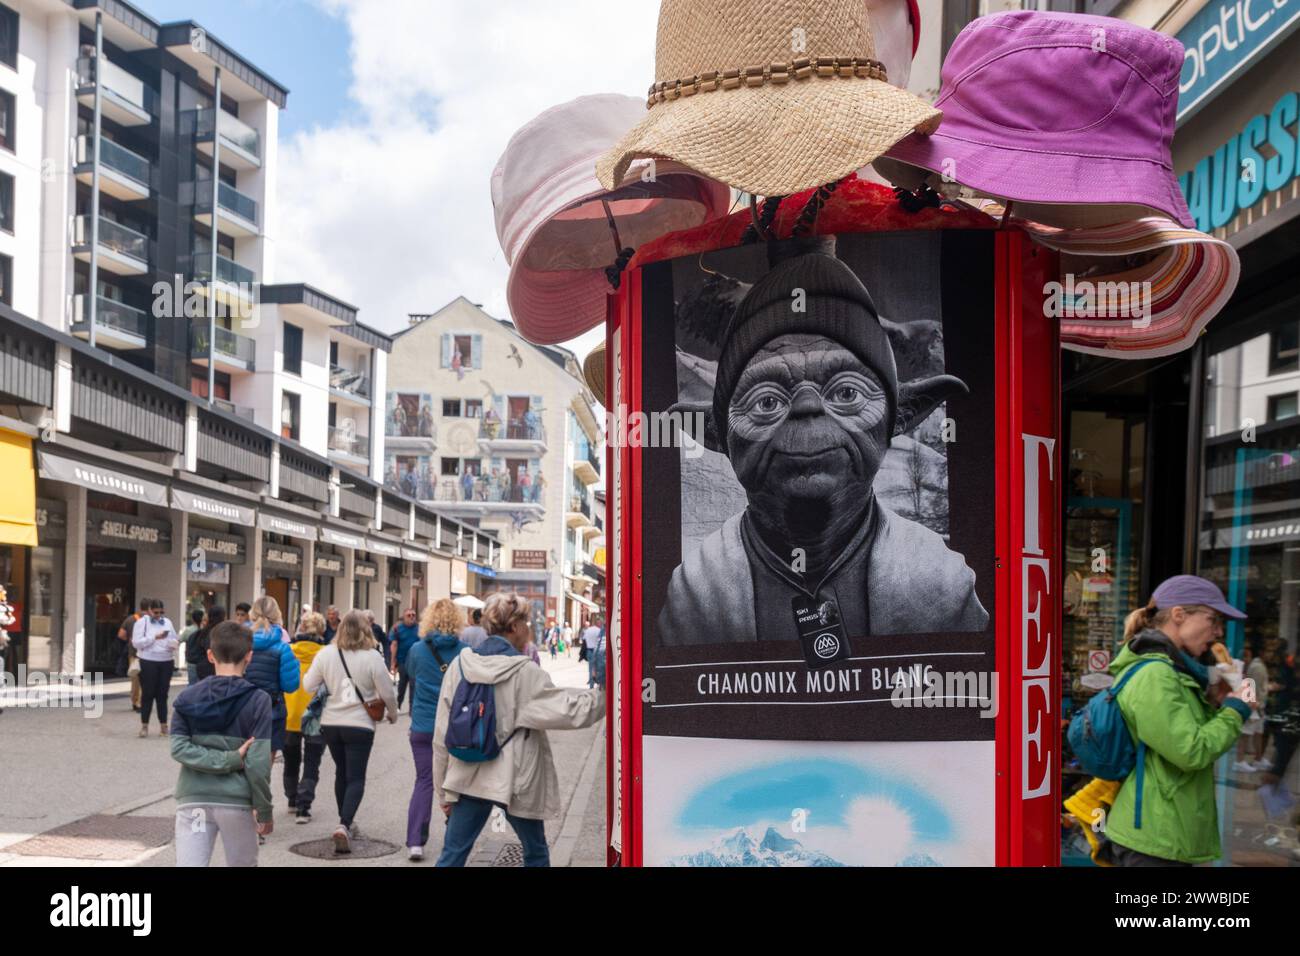 Negozio turistico che vende cappelli e t-shirt stampate nel centro della città alpina in estate, Chamonix, alta Savoia, Alvernia Rodano Alpi, Francia Foto Stock